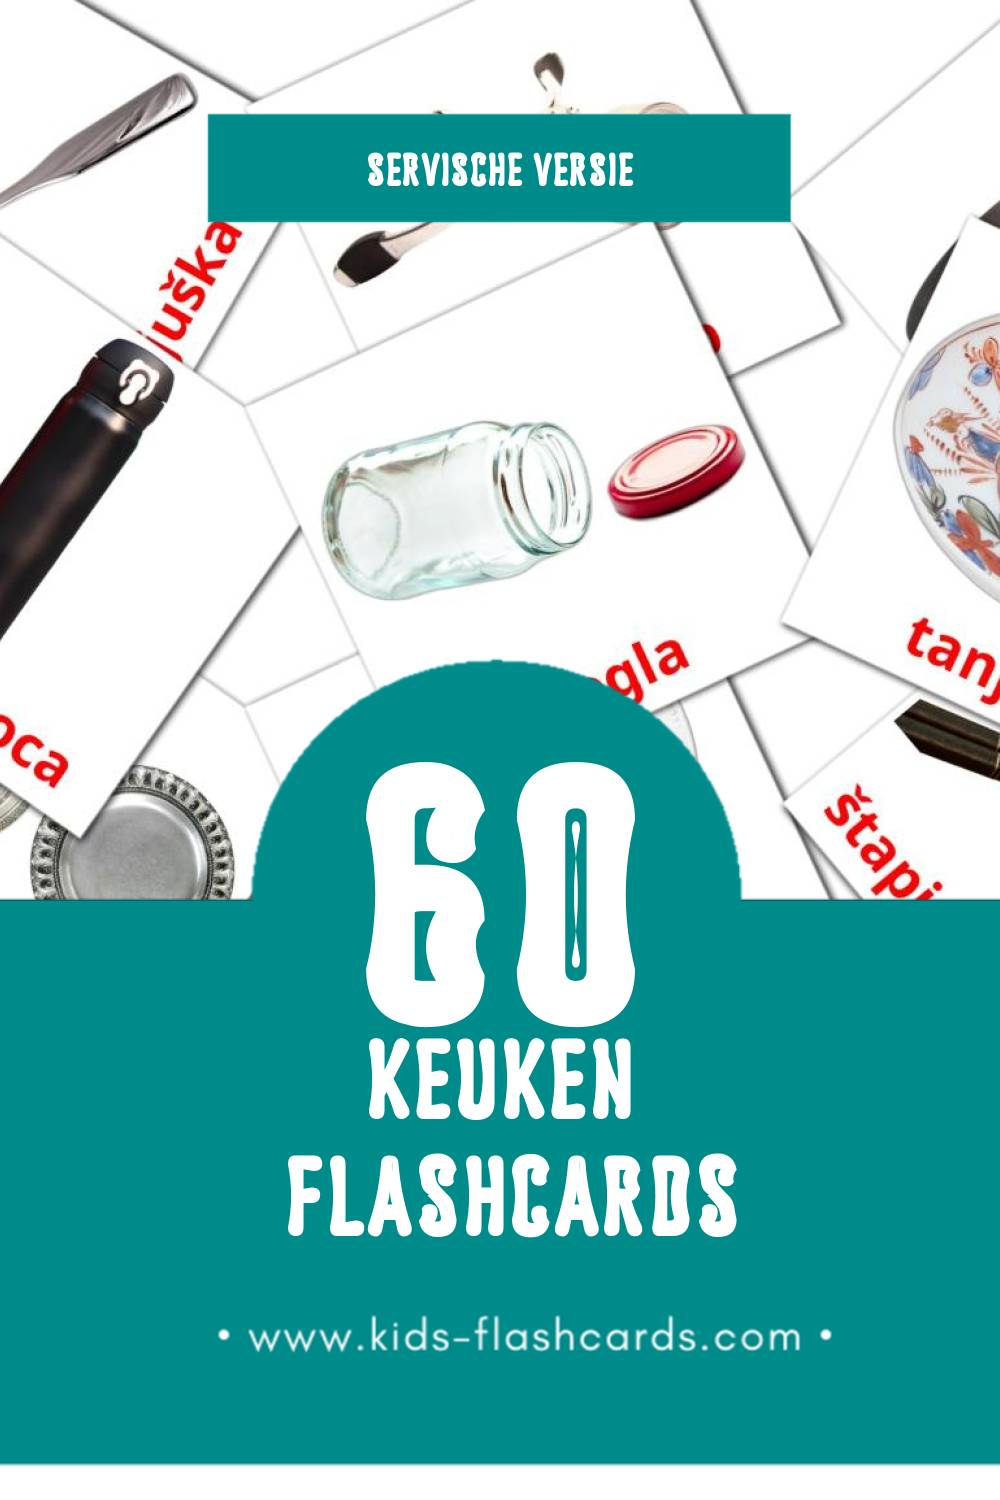 Visuele Kuhinja Flashcards voor Kleuters (60 kaarten in het Servisch)